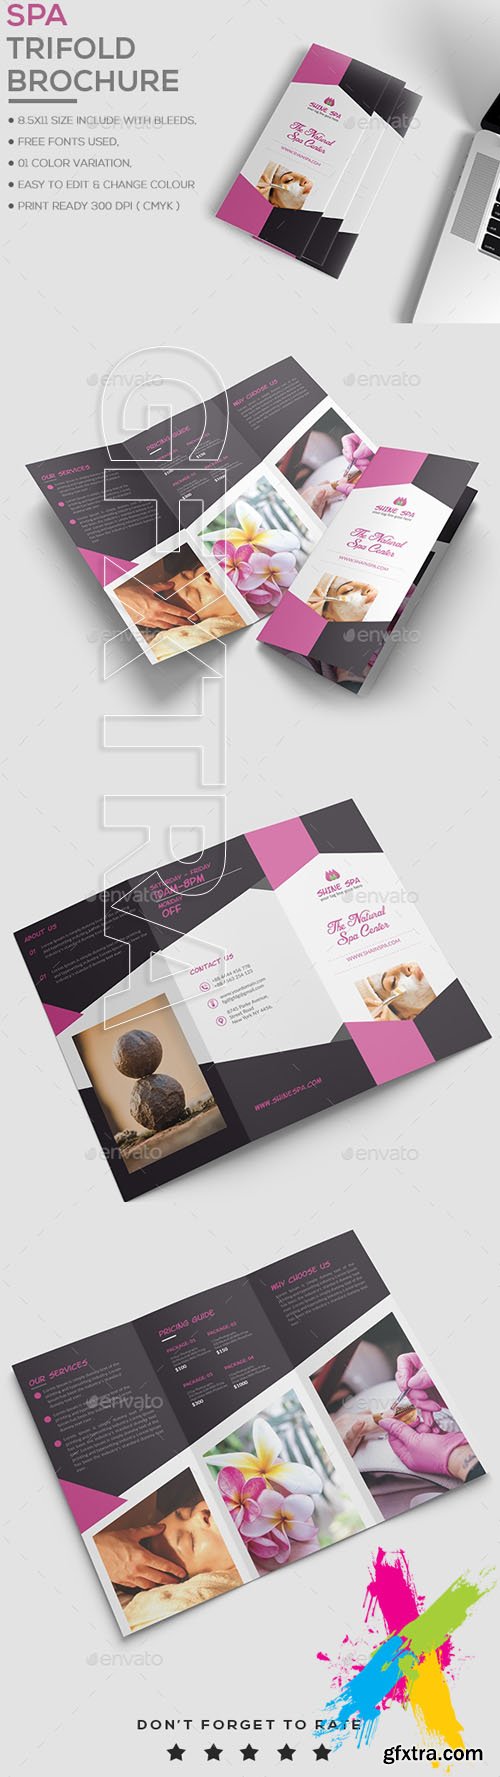 Graphicriver - Spa Brochure Template 20137988